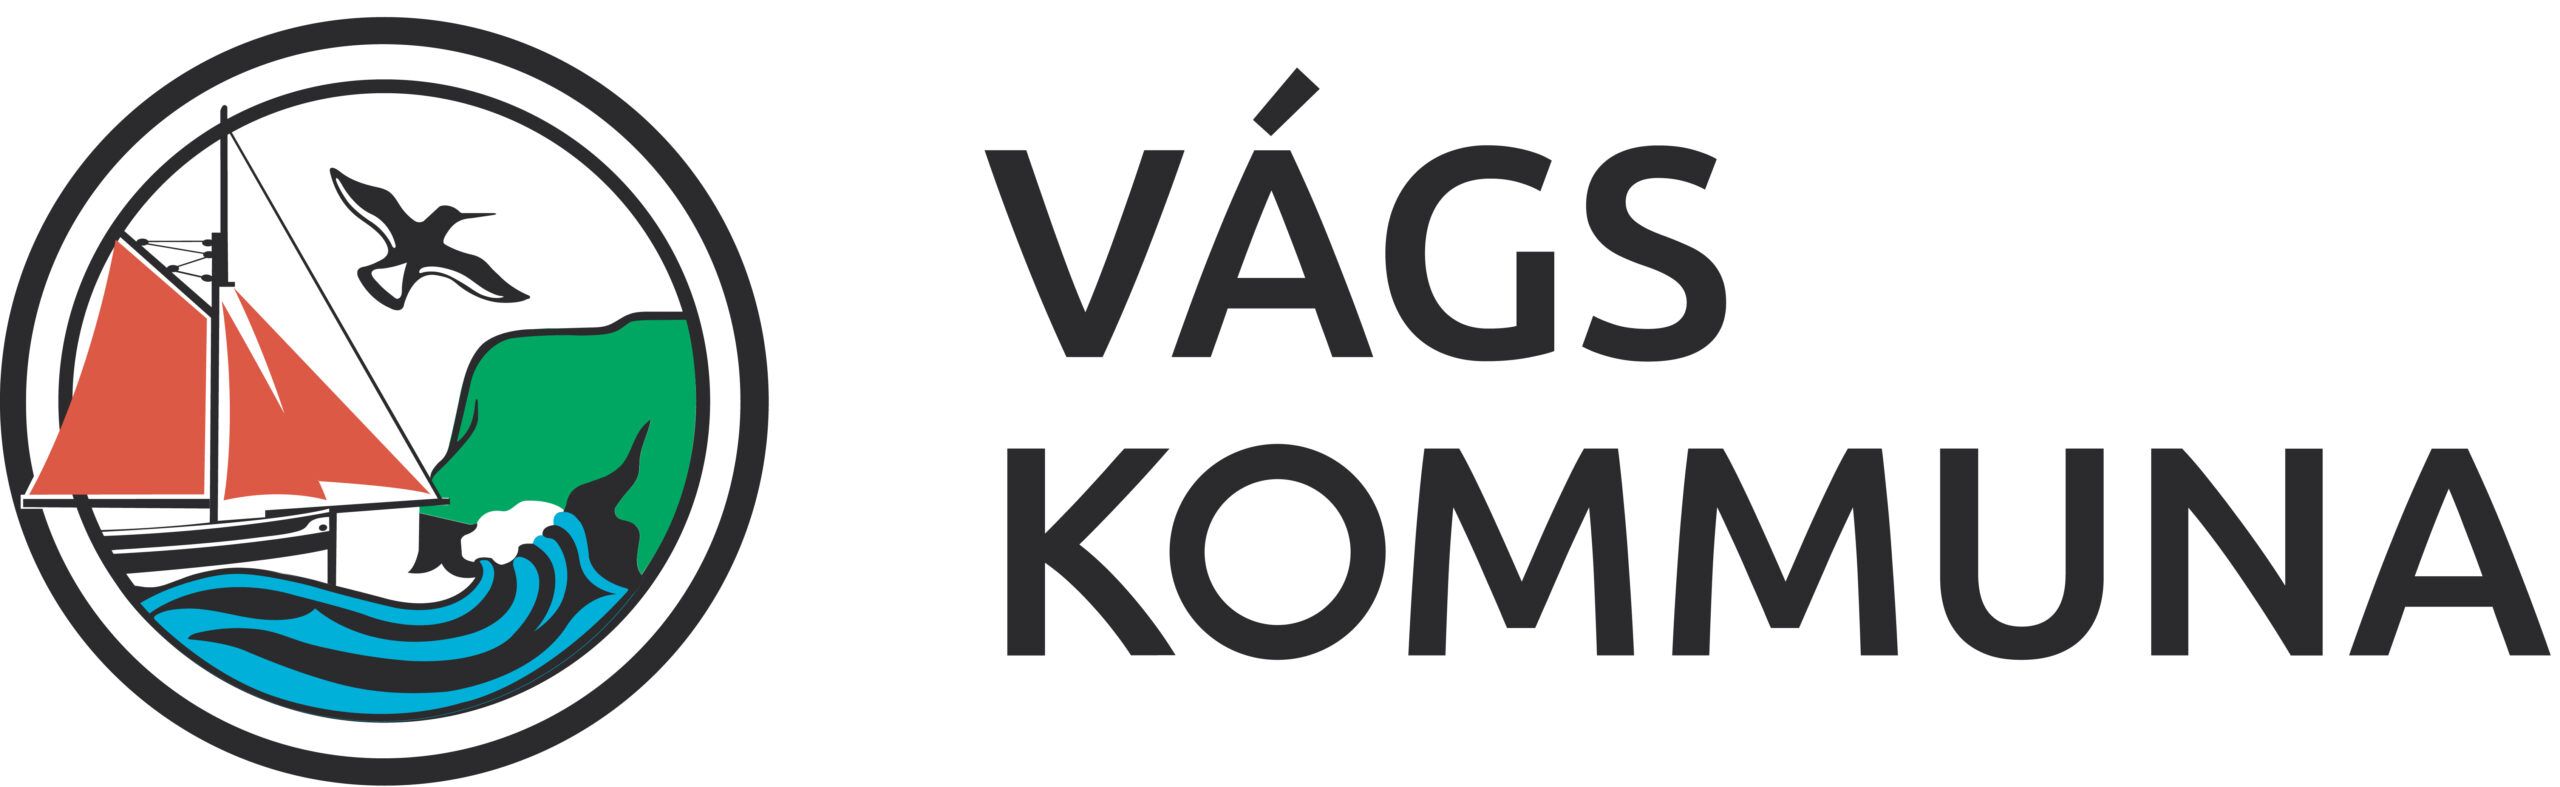 Logo_Vagskommuna-01